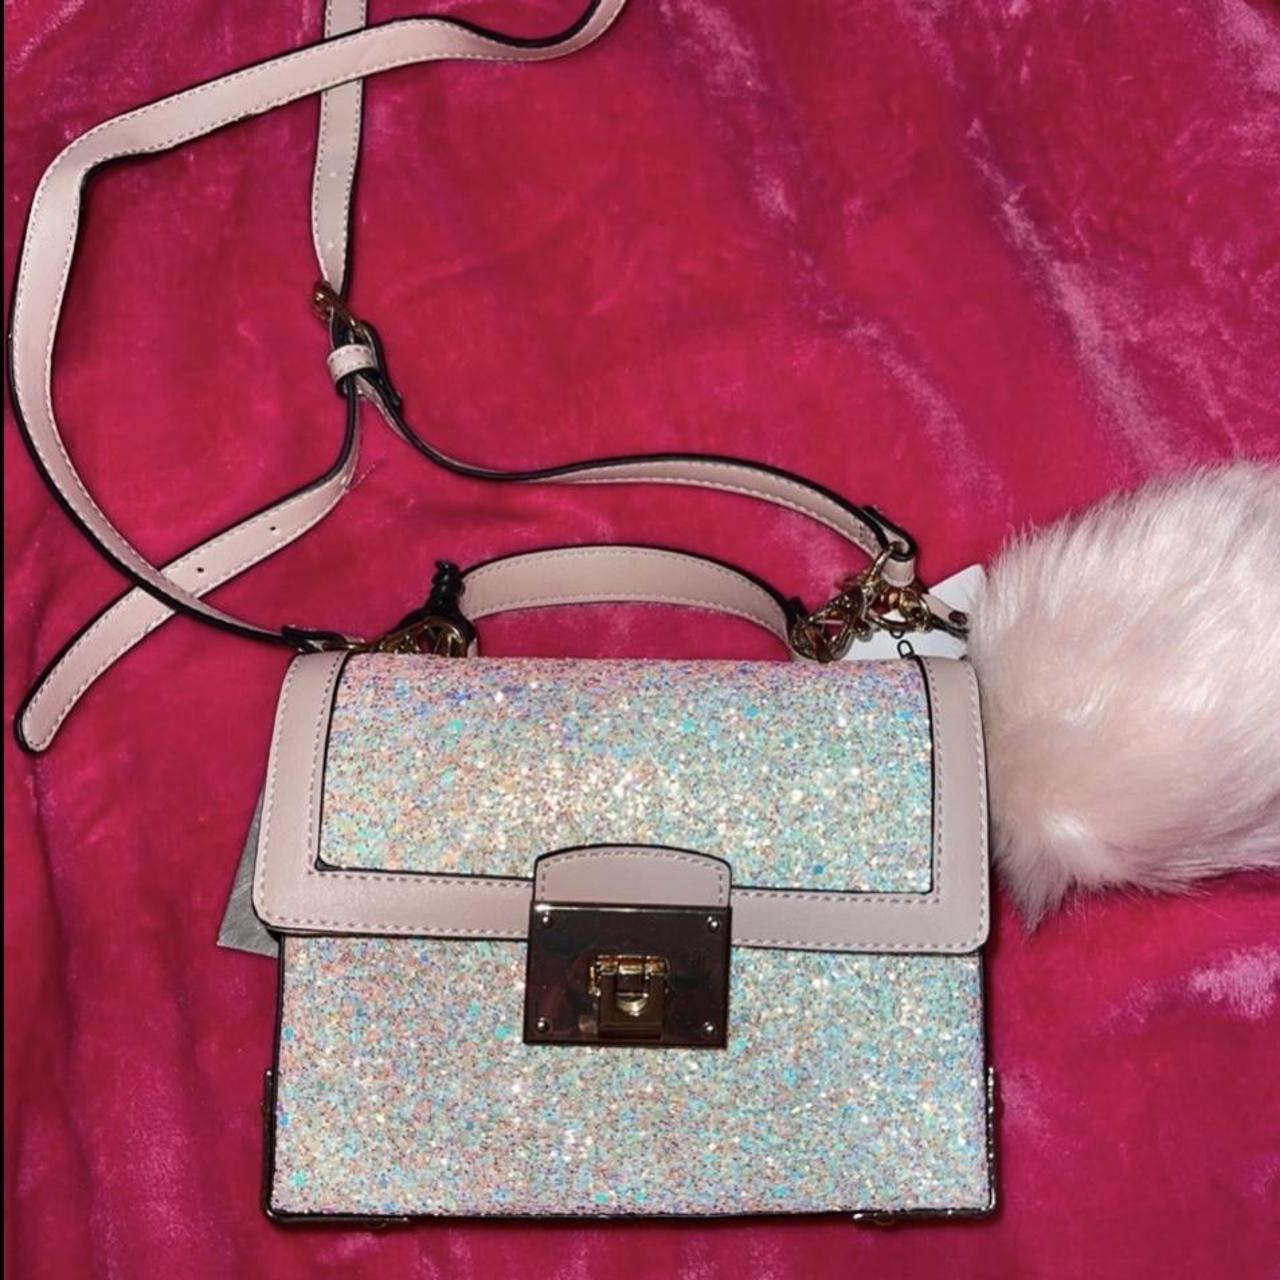 Buy Rose Gold Handbags for Women by ALDO Online | Ajio.com